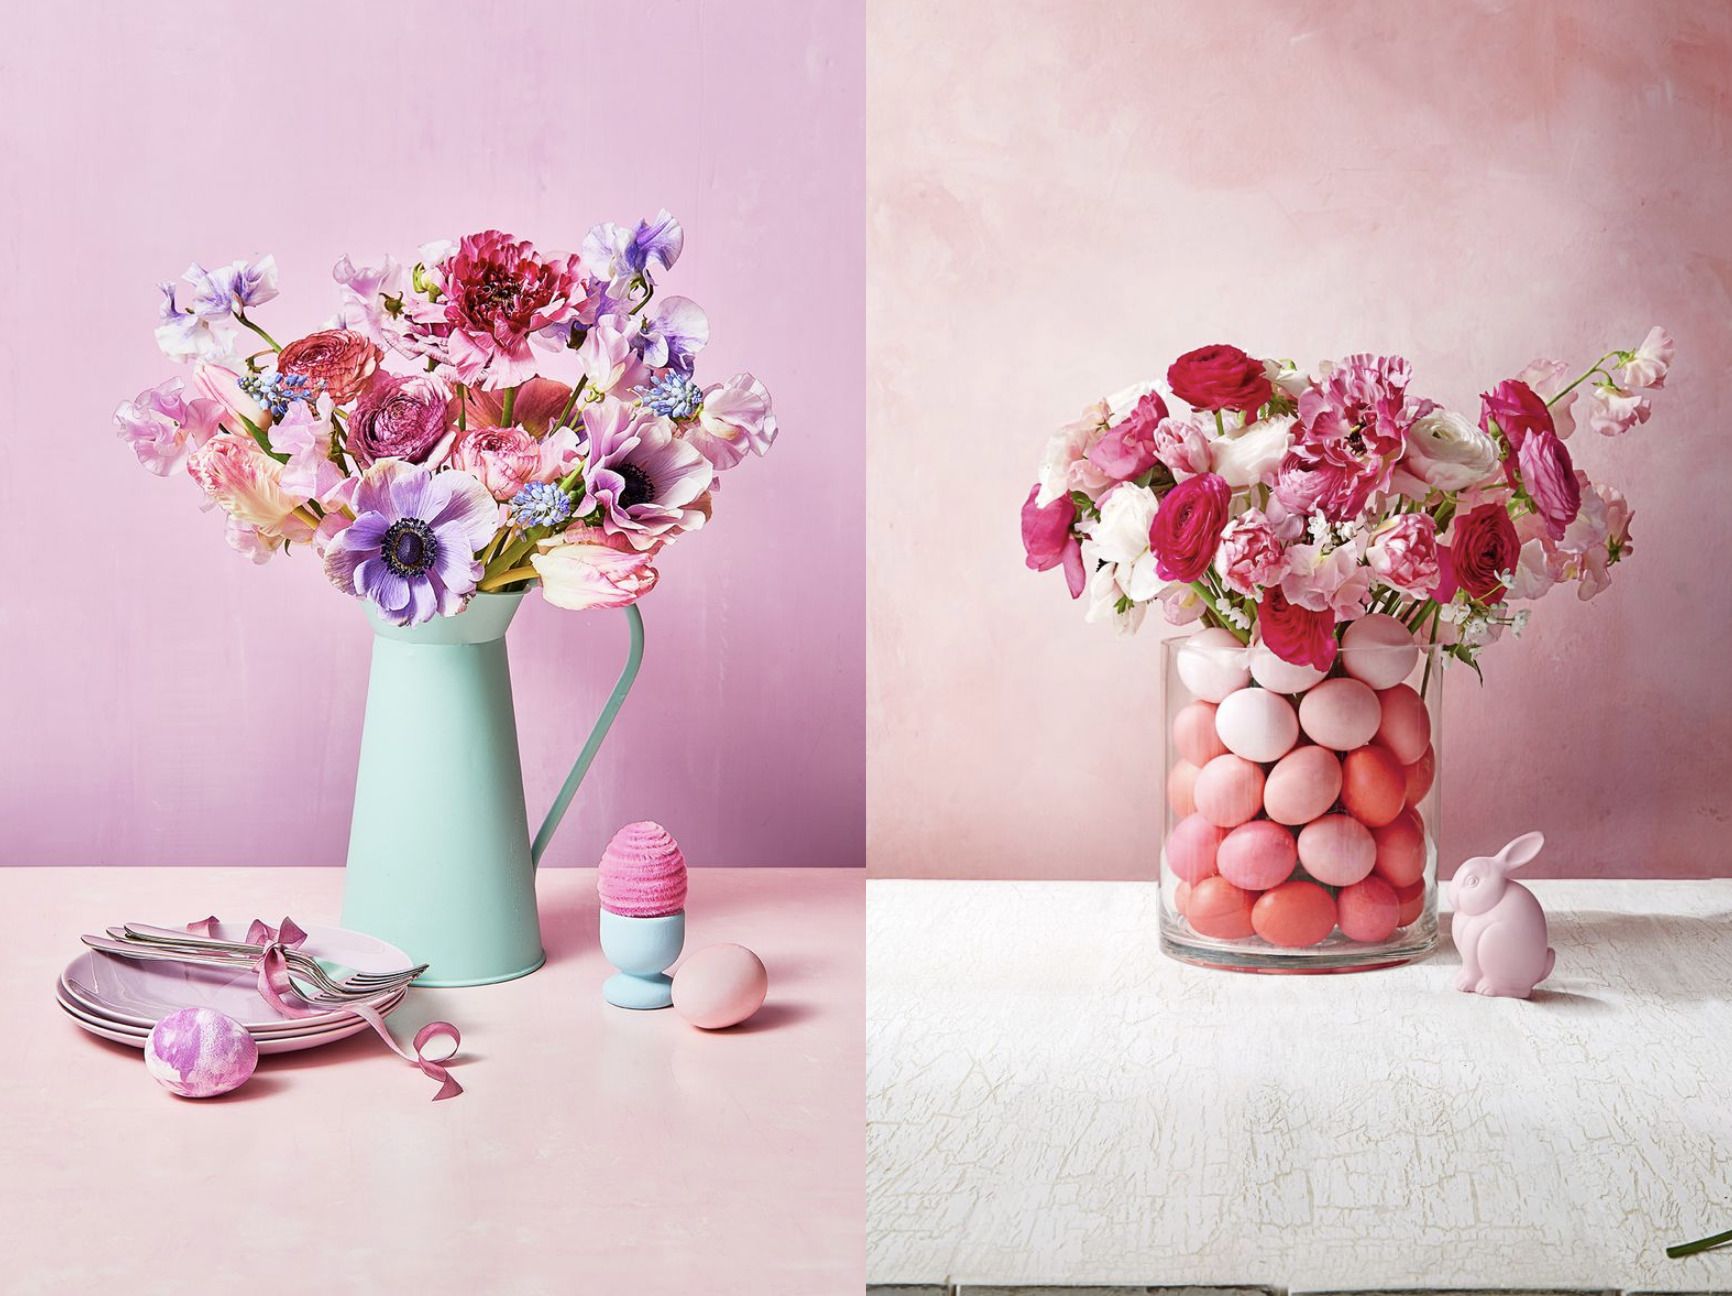 50 Best Floral Crafts To Make